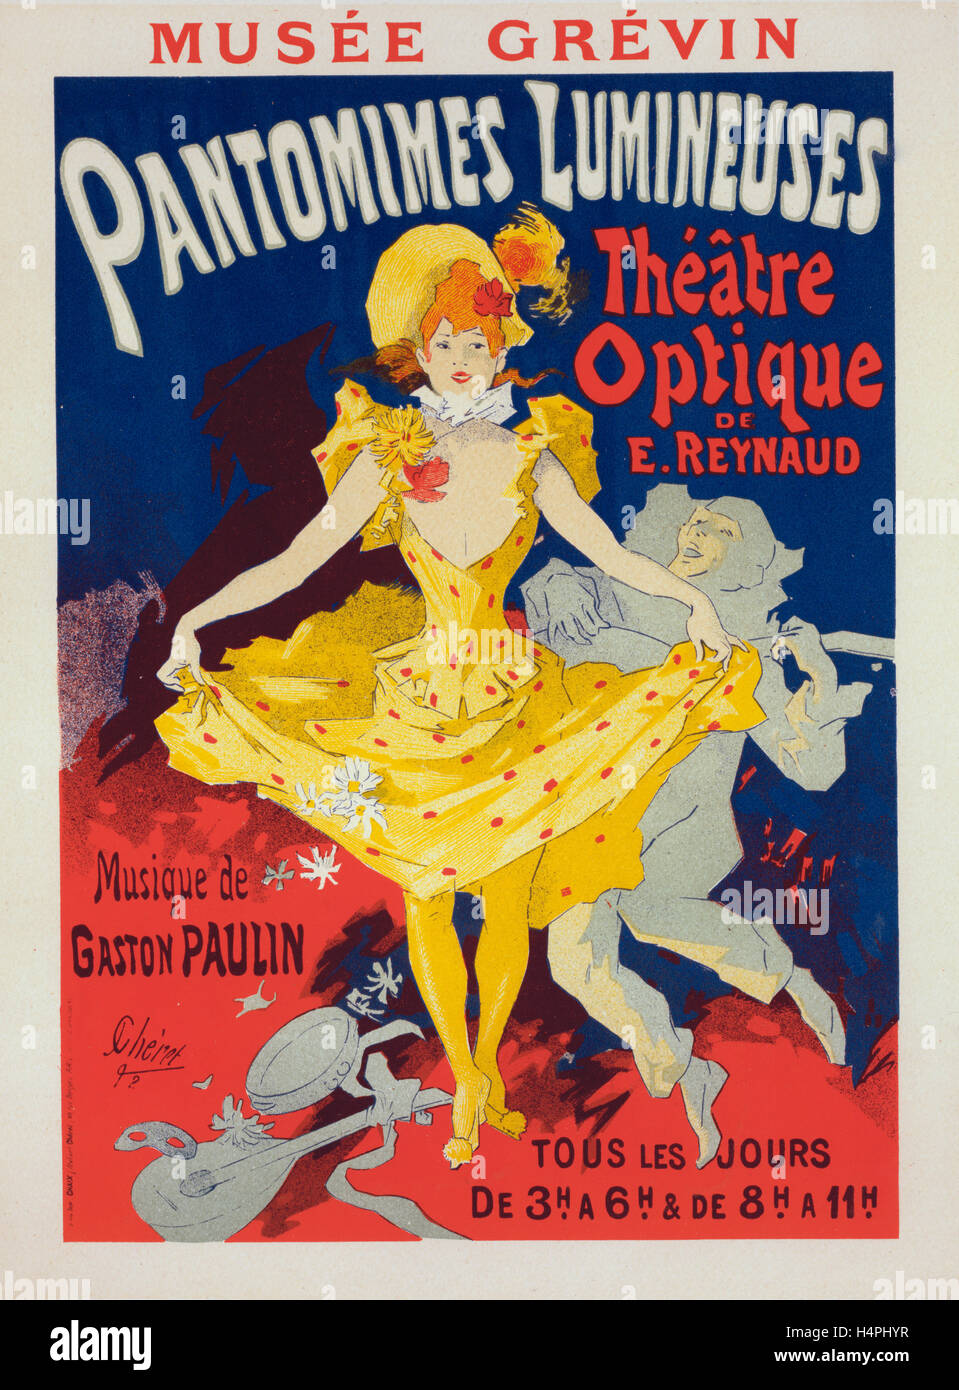 Poster for Musée Grévin, pantomimes lumineuses, Théâtre Optique de E. Reynaud, musique de Gaston Paulin. Jules Chéret, 1836-1932 Stock Photo